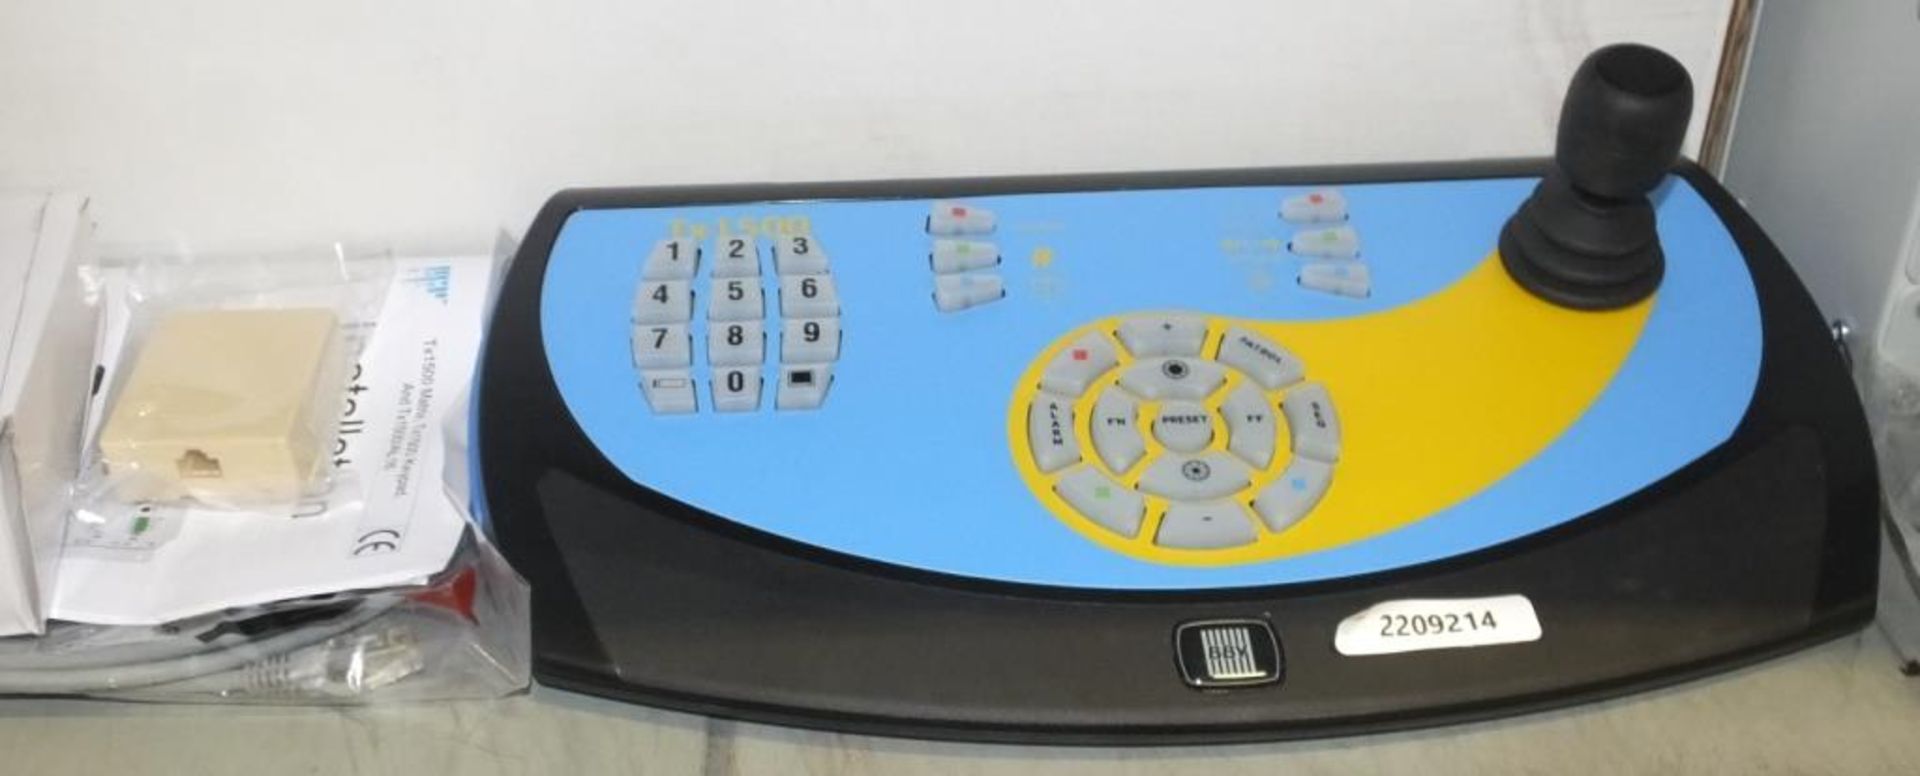 BBV Tx1500 Keypad, AE BH 220 Universal Rack - Image 2 of 4